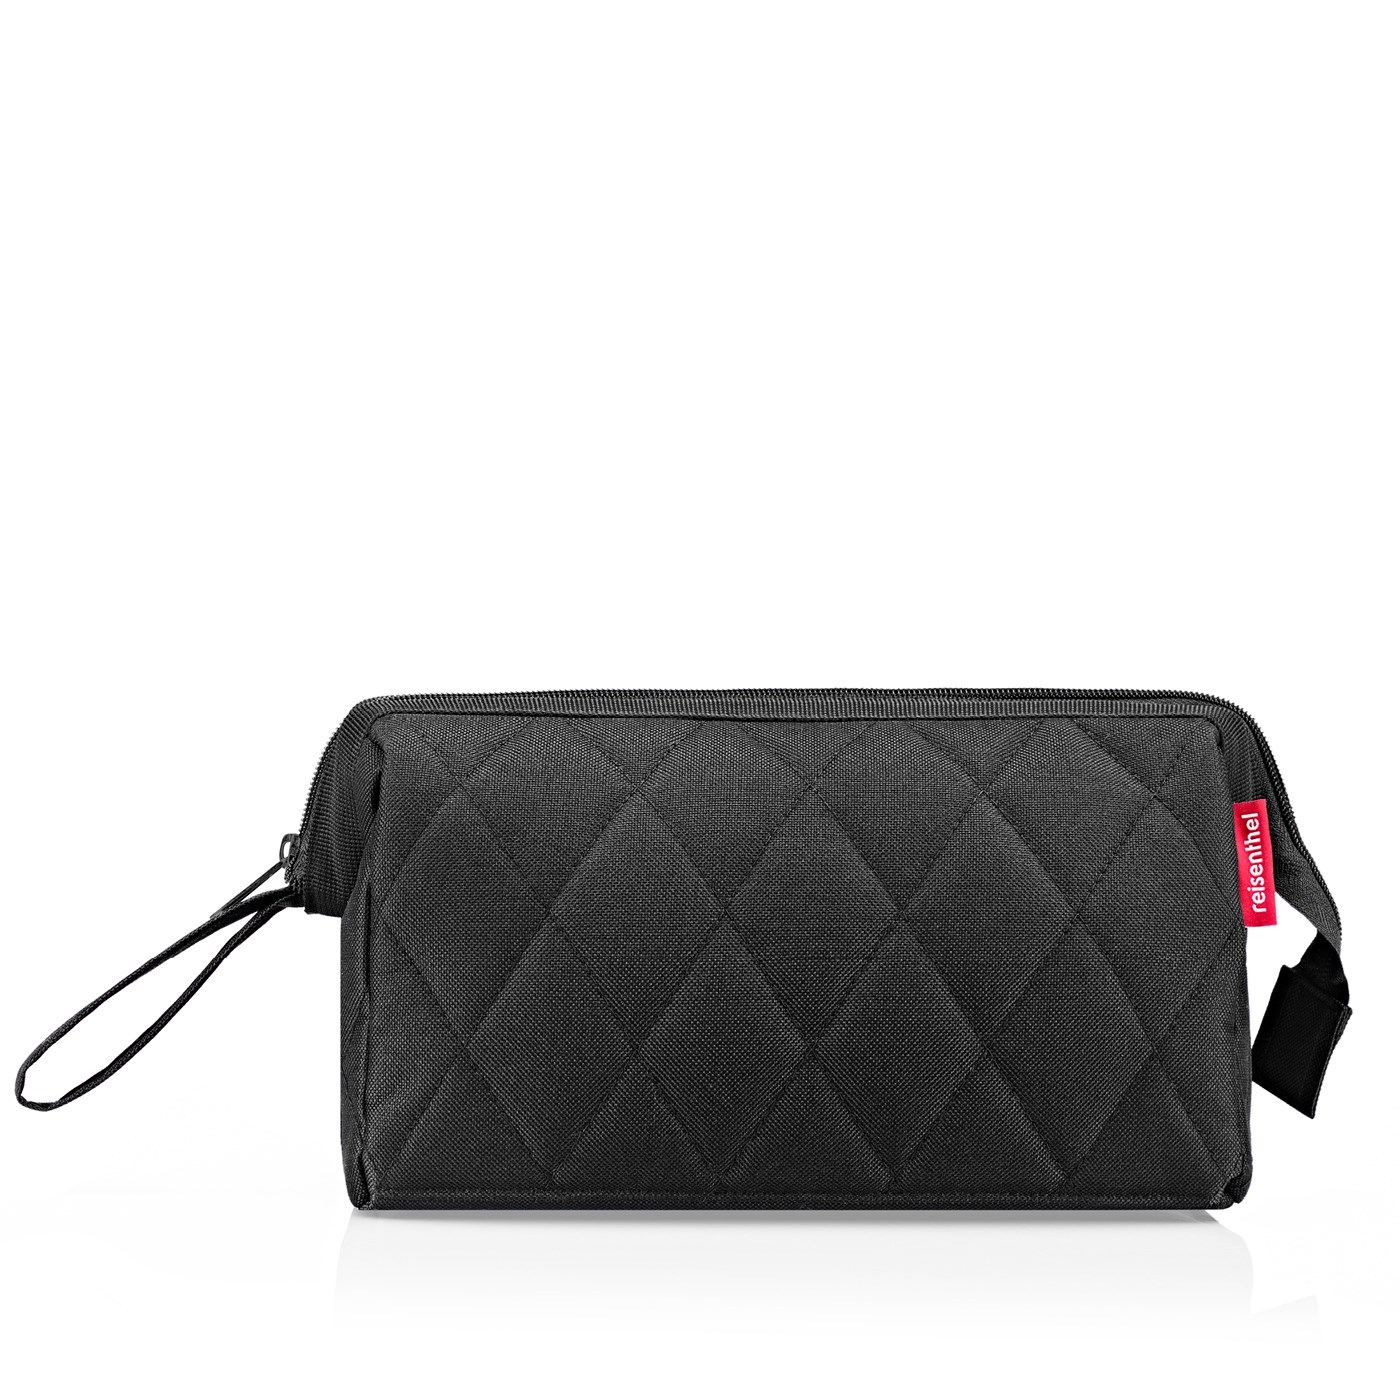 Kosmetická taška Travelcosmetic rhombus black_1